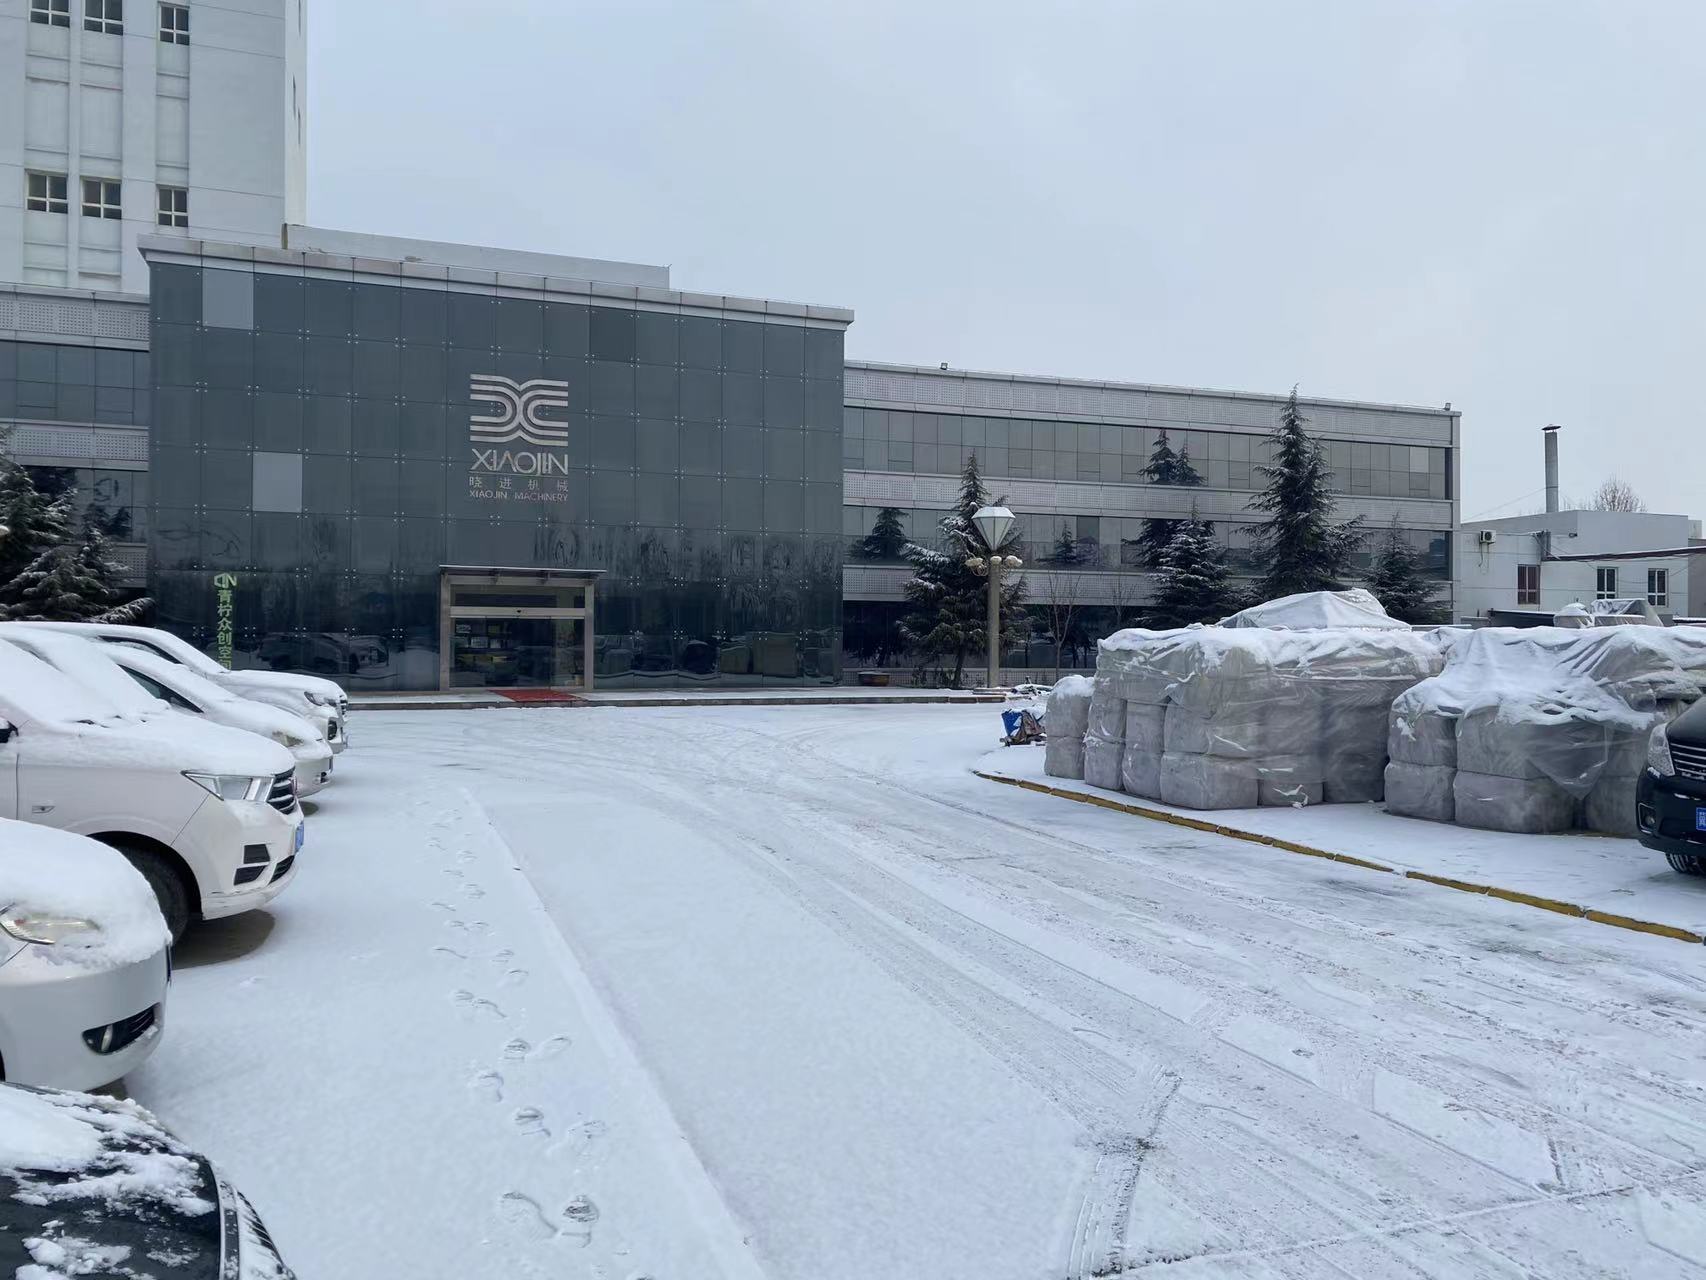 Snowing in Xiaojin machinery